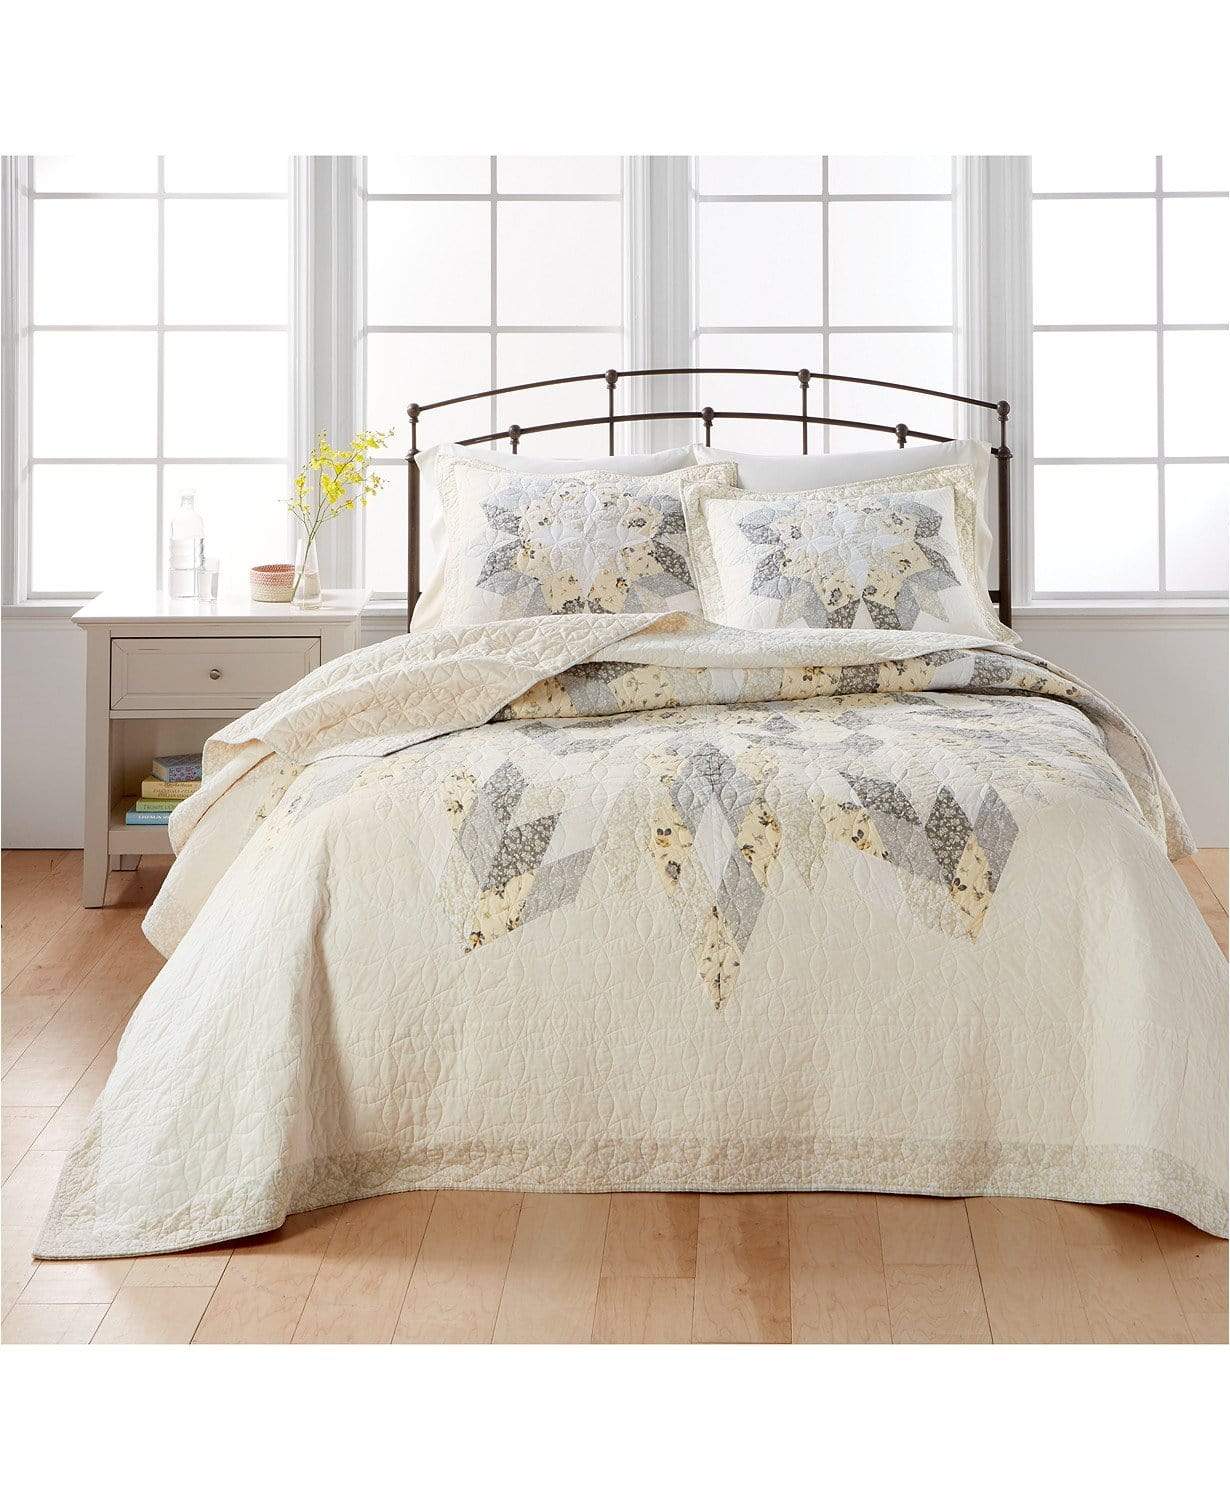 Martha Stewart Collection Comforter/Quilt/Duvet Full - 244cm x 279cm / Ivory Starburst Full Bedspread